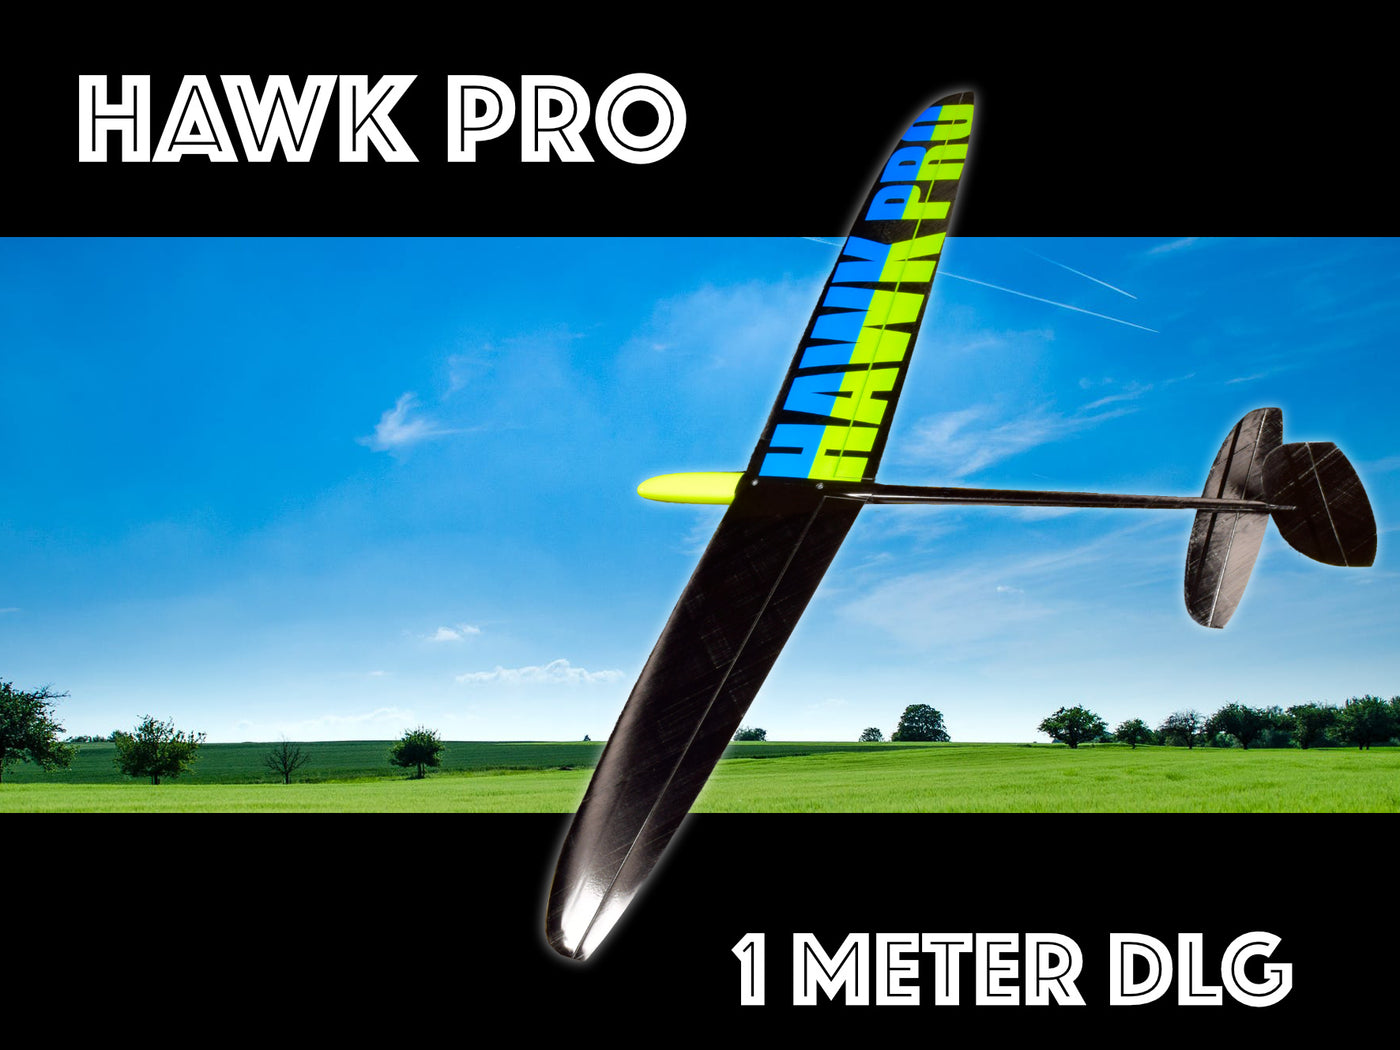 Hawk Pro 1 Meter DLG